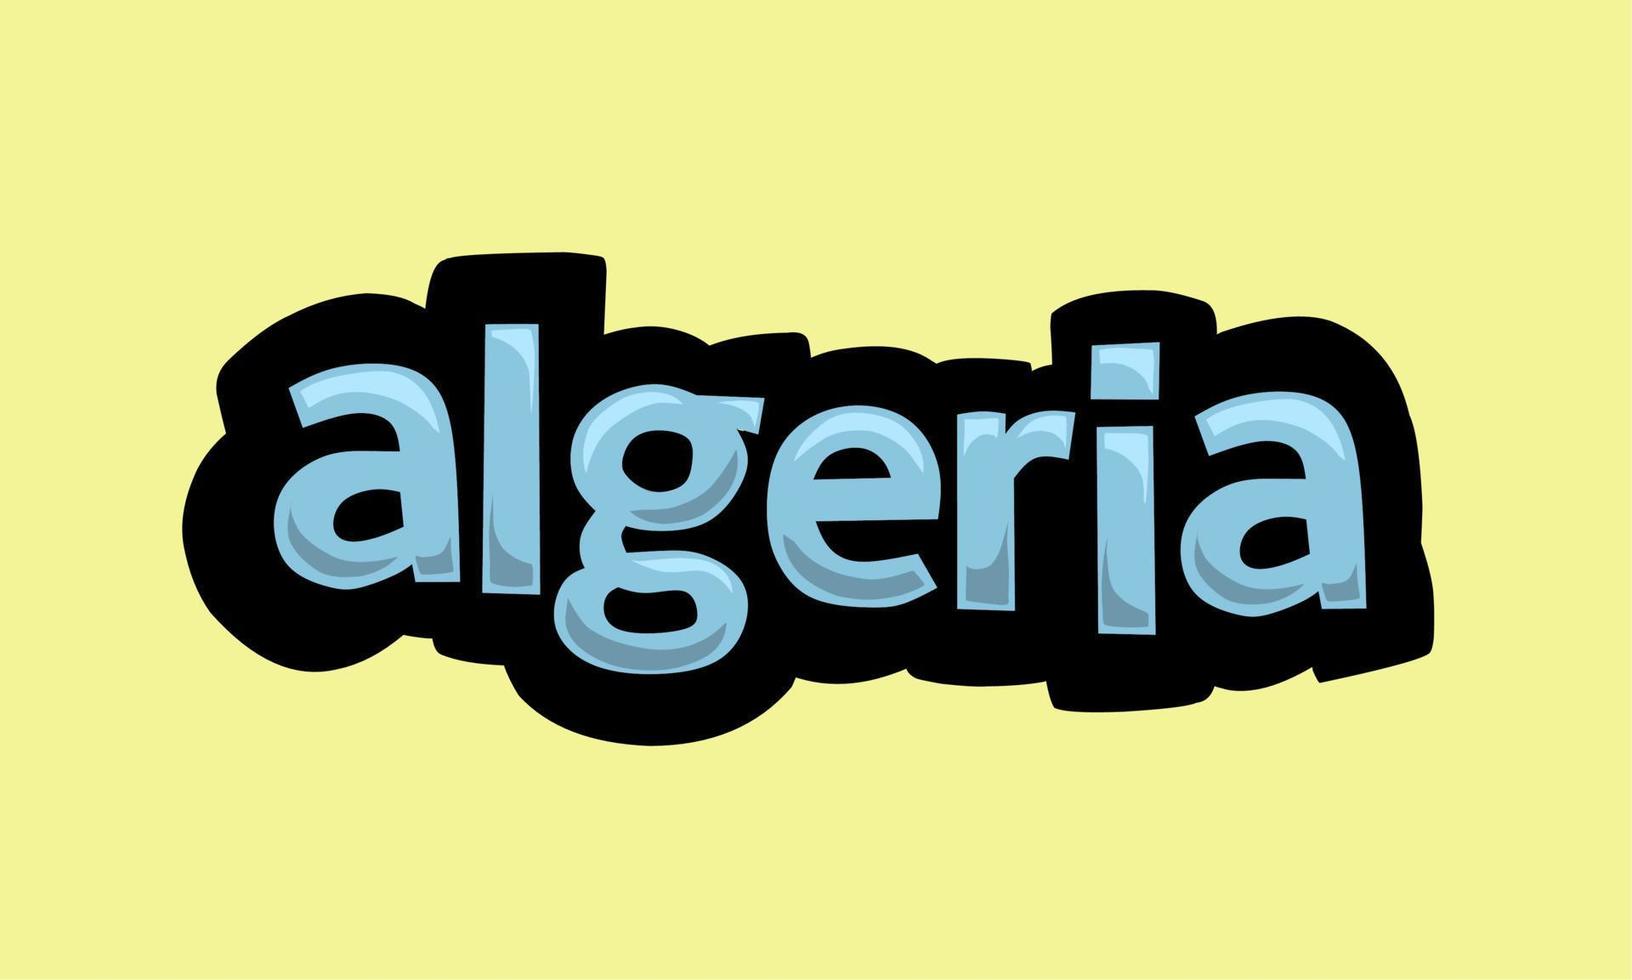 algeriet skrivning vektor design på en gul bakgrund